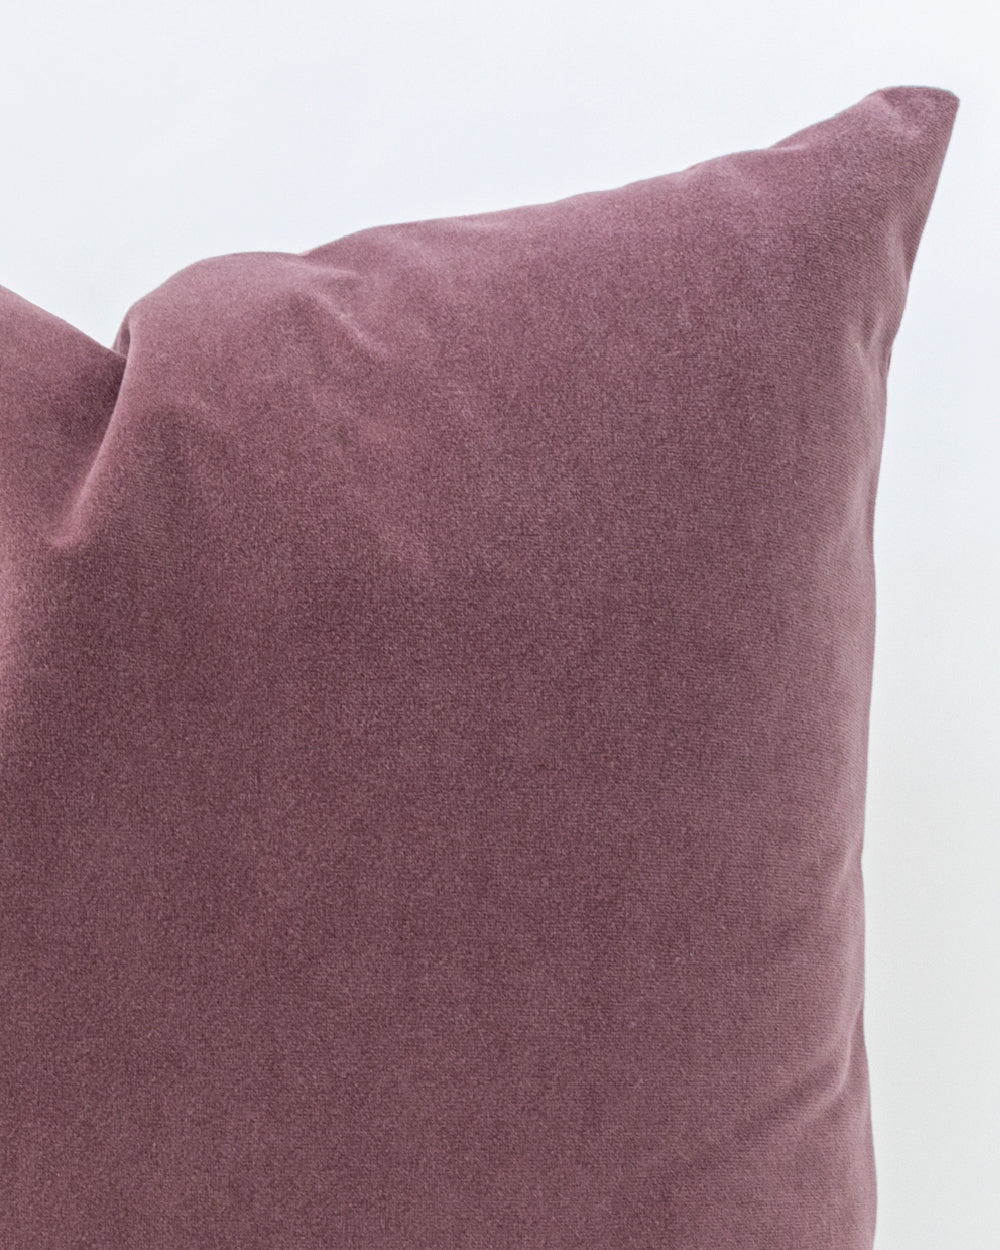 Meghan Velvet Pillow Cover, Mulberry